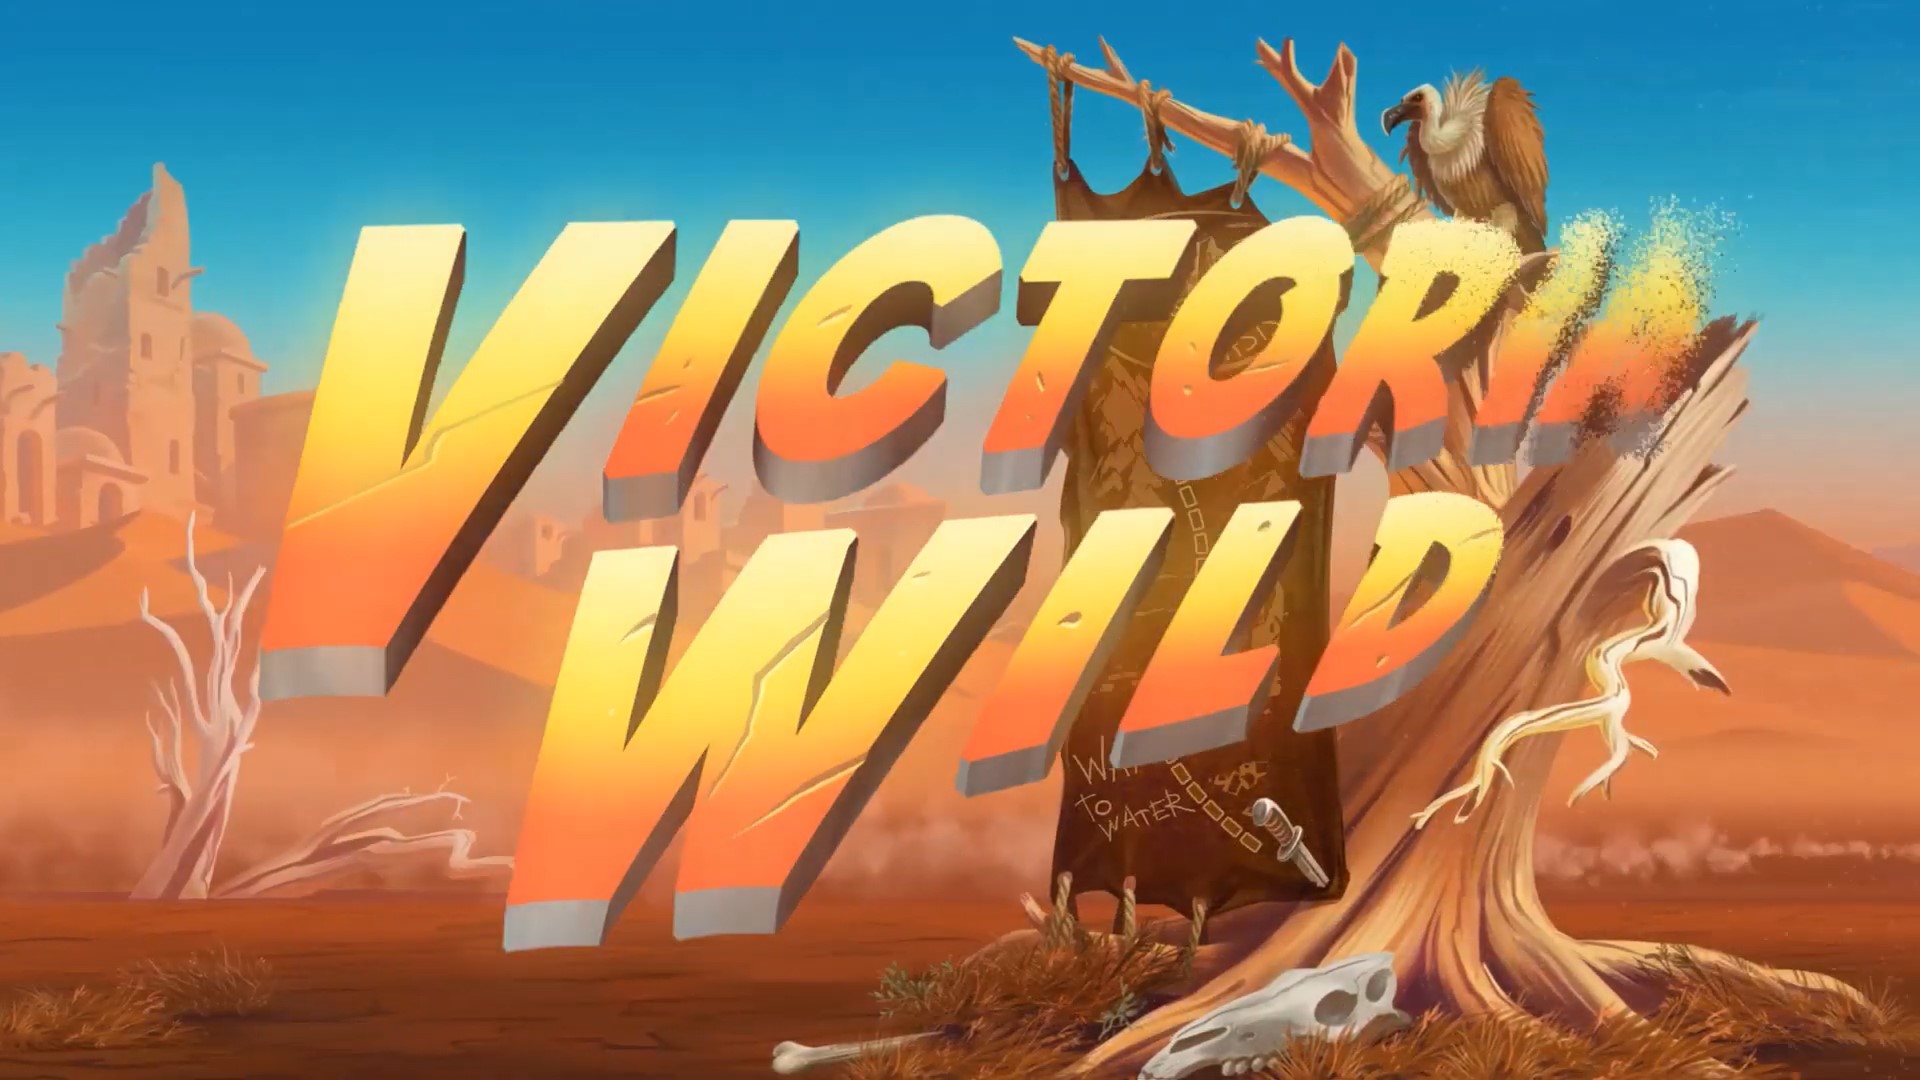 Victoria Wild logo TrueLab